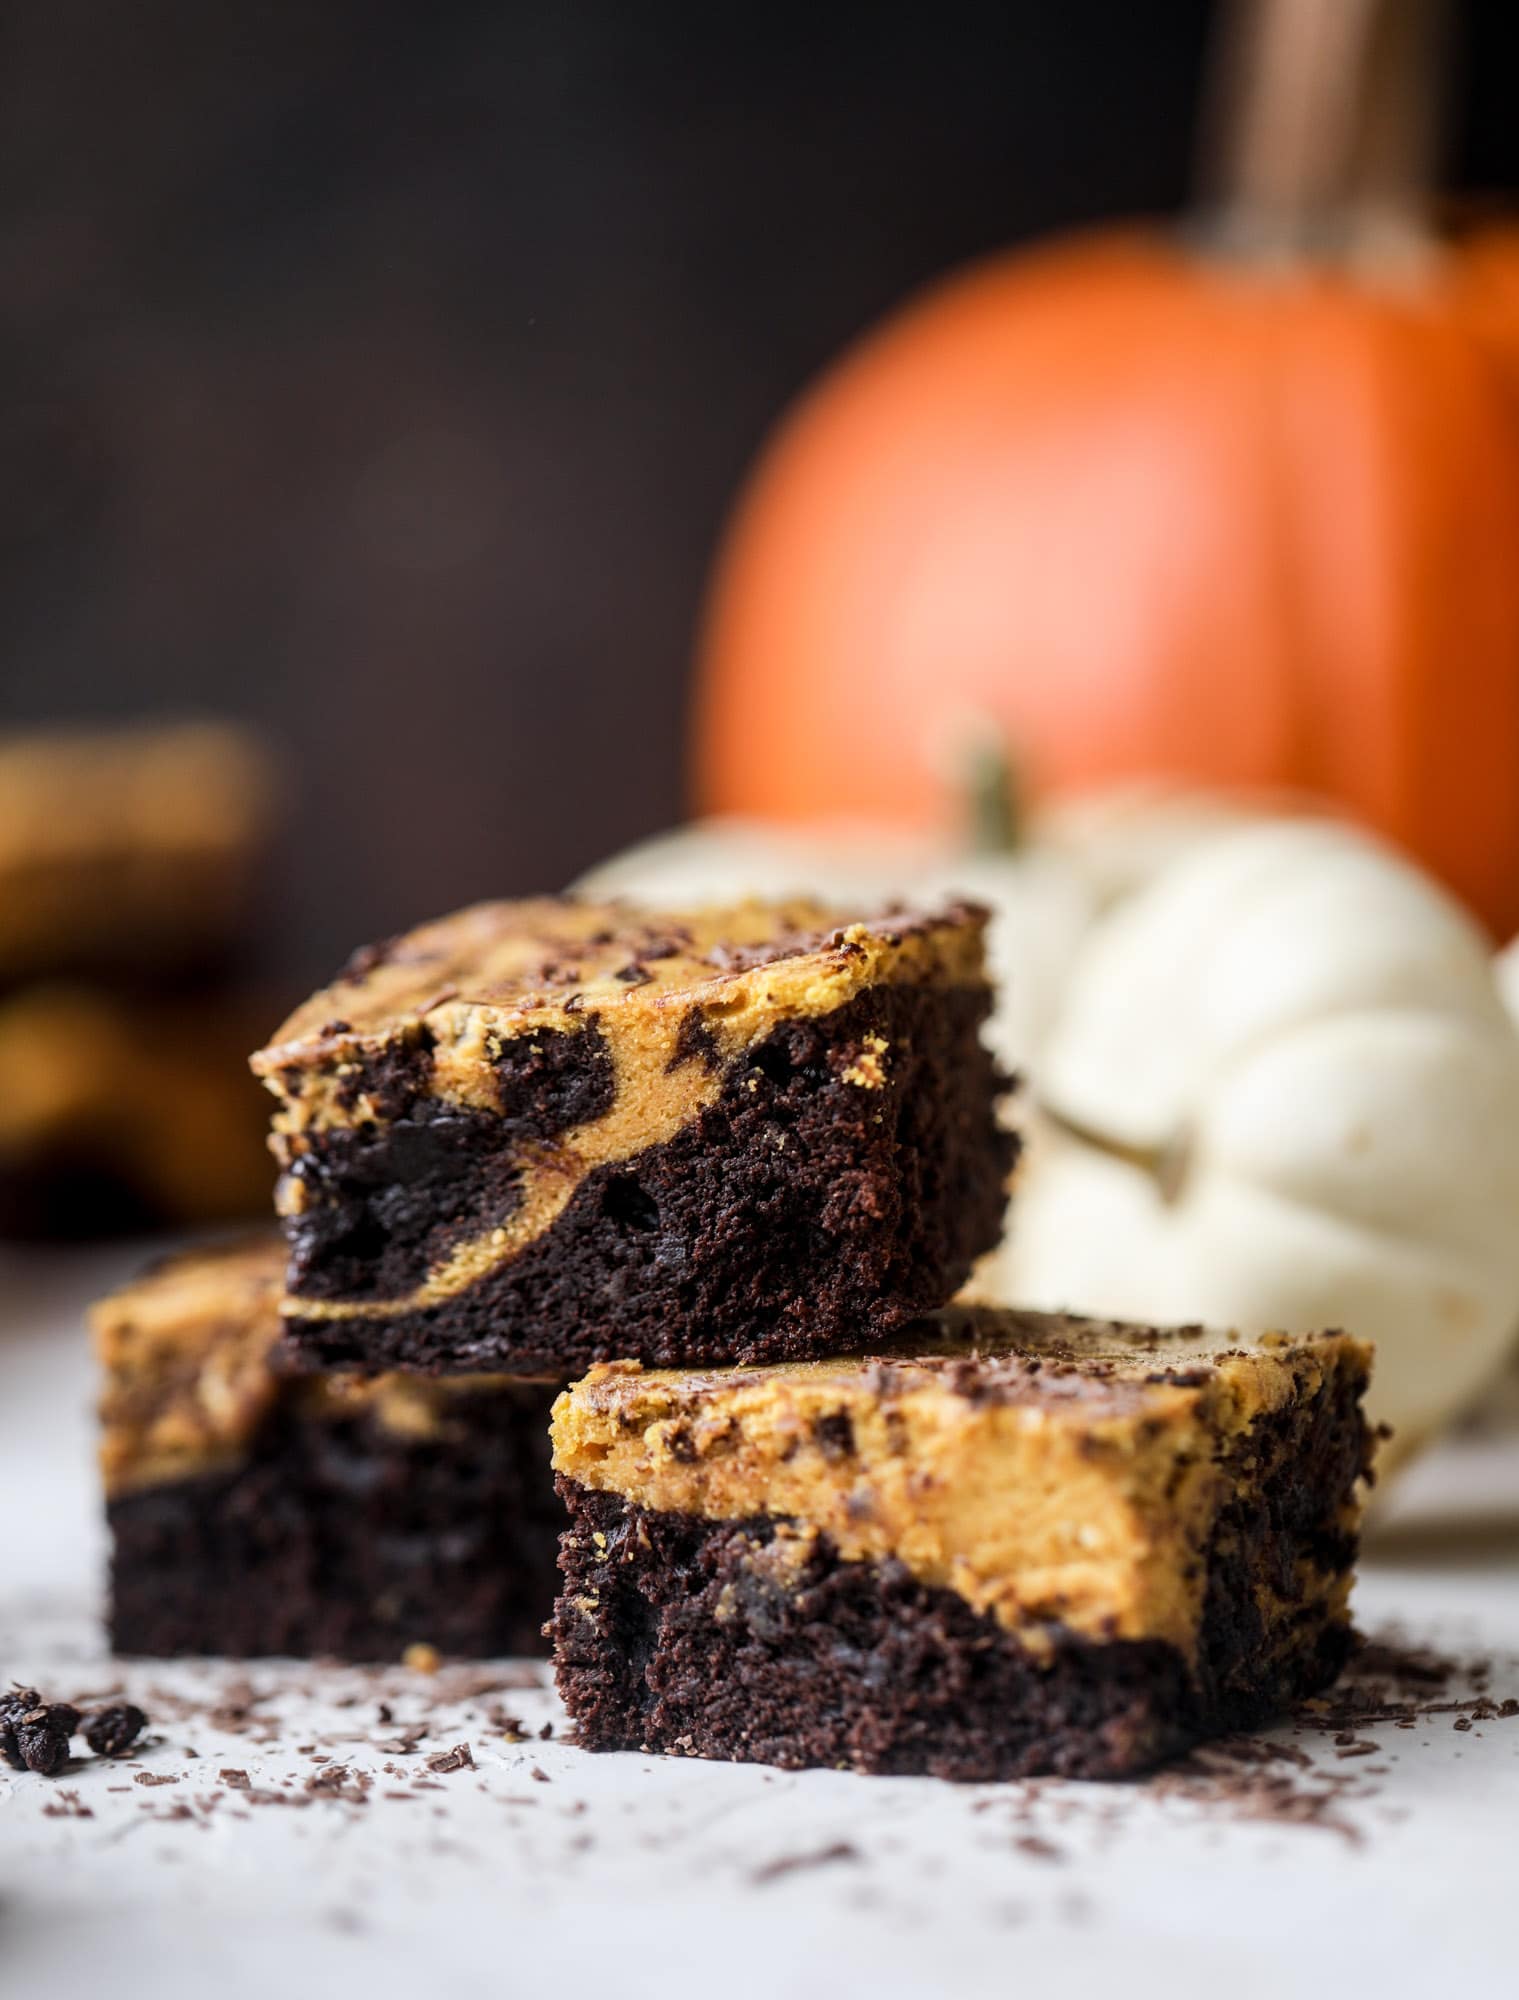 这些南瓜布朗尼底部有一层松软的巧克力，上面有一层丝滑的南瓜!它们是如此美味，丰富和完美的秋天。南瓜布朗尼很容易一起来，也可以提前做好!我嚎用作嚎叫#pumpkin #brownies